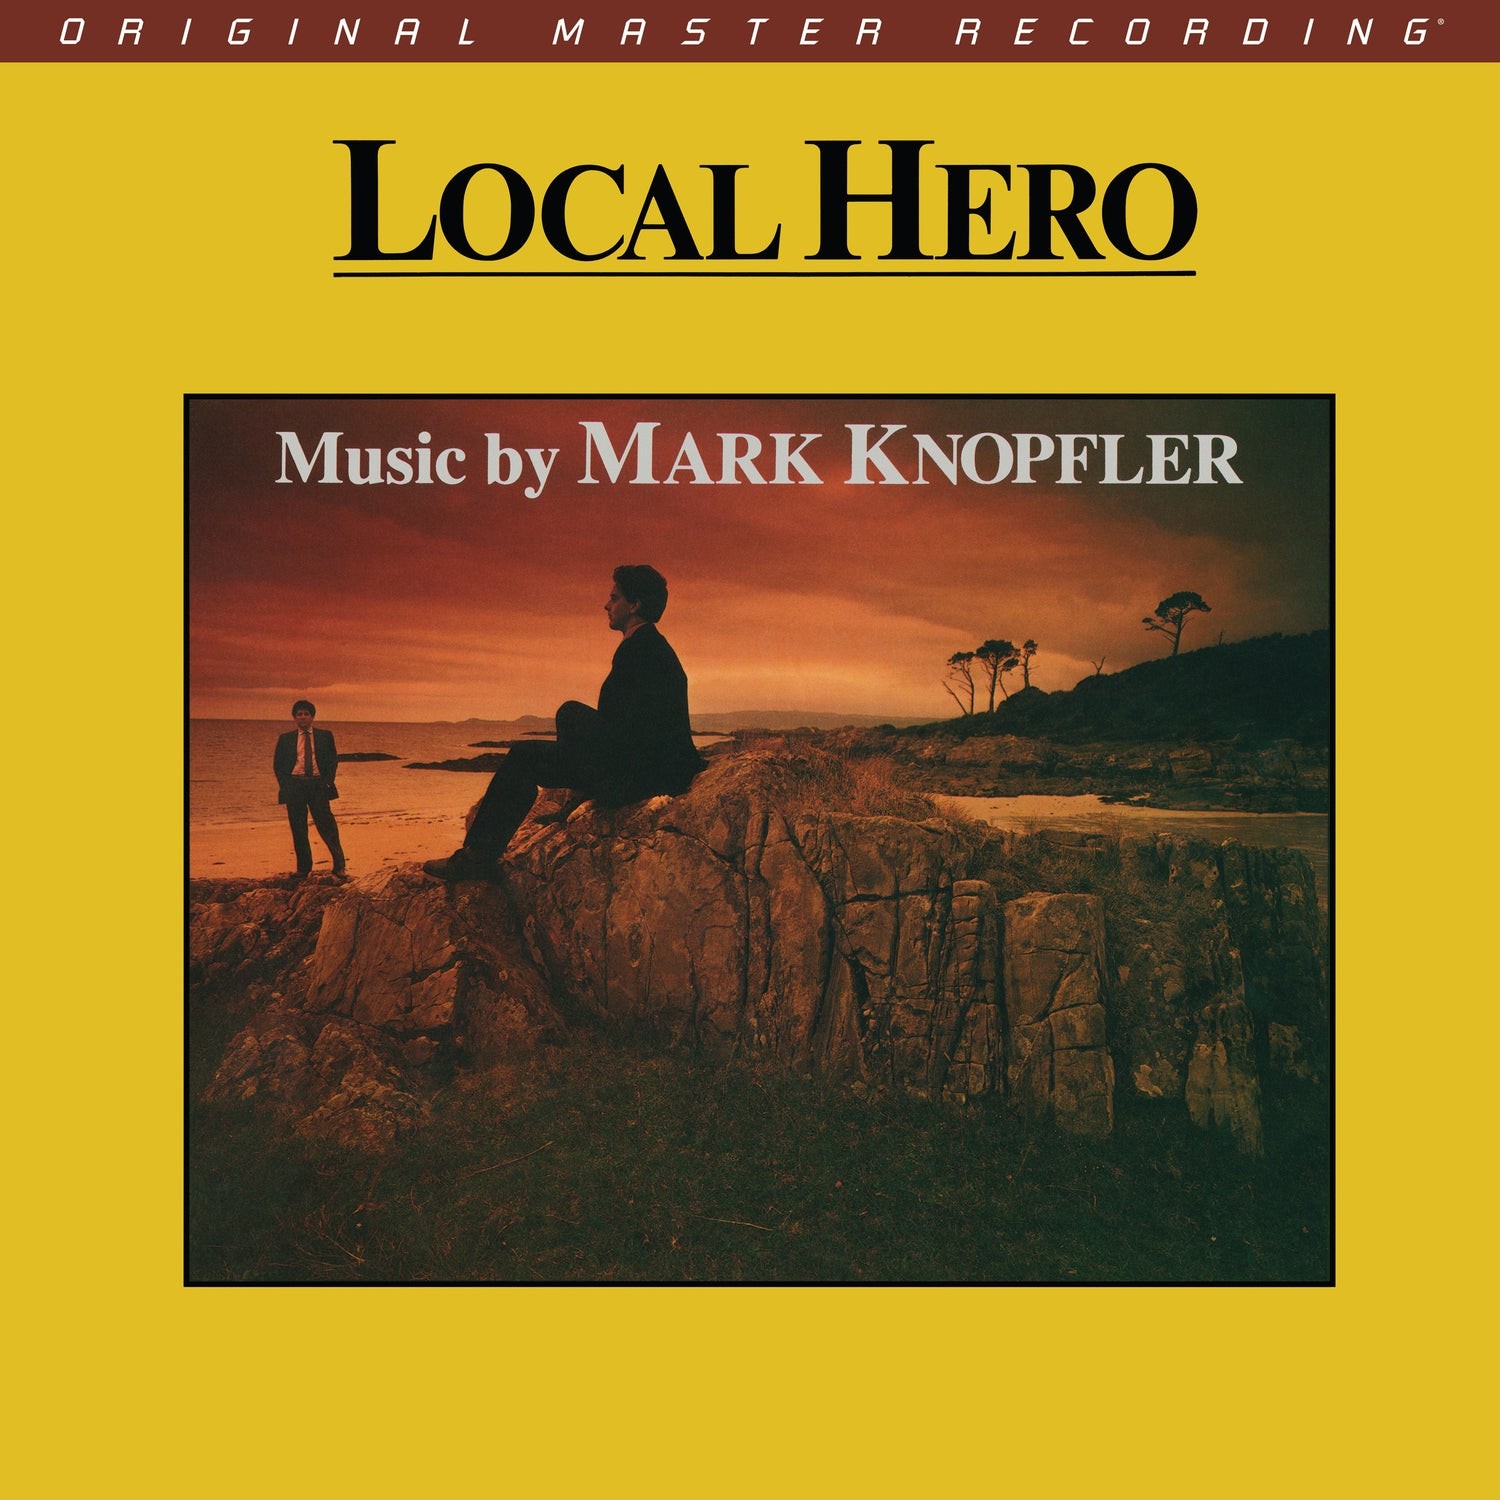 Mark Knopfler – Local Hero (2022 MFSL UltraDisc UHR SACD) (1983/2022) SACD ISO